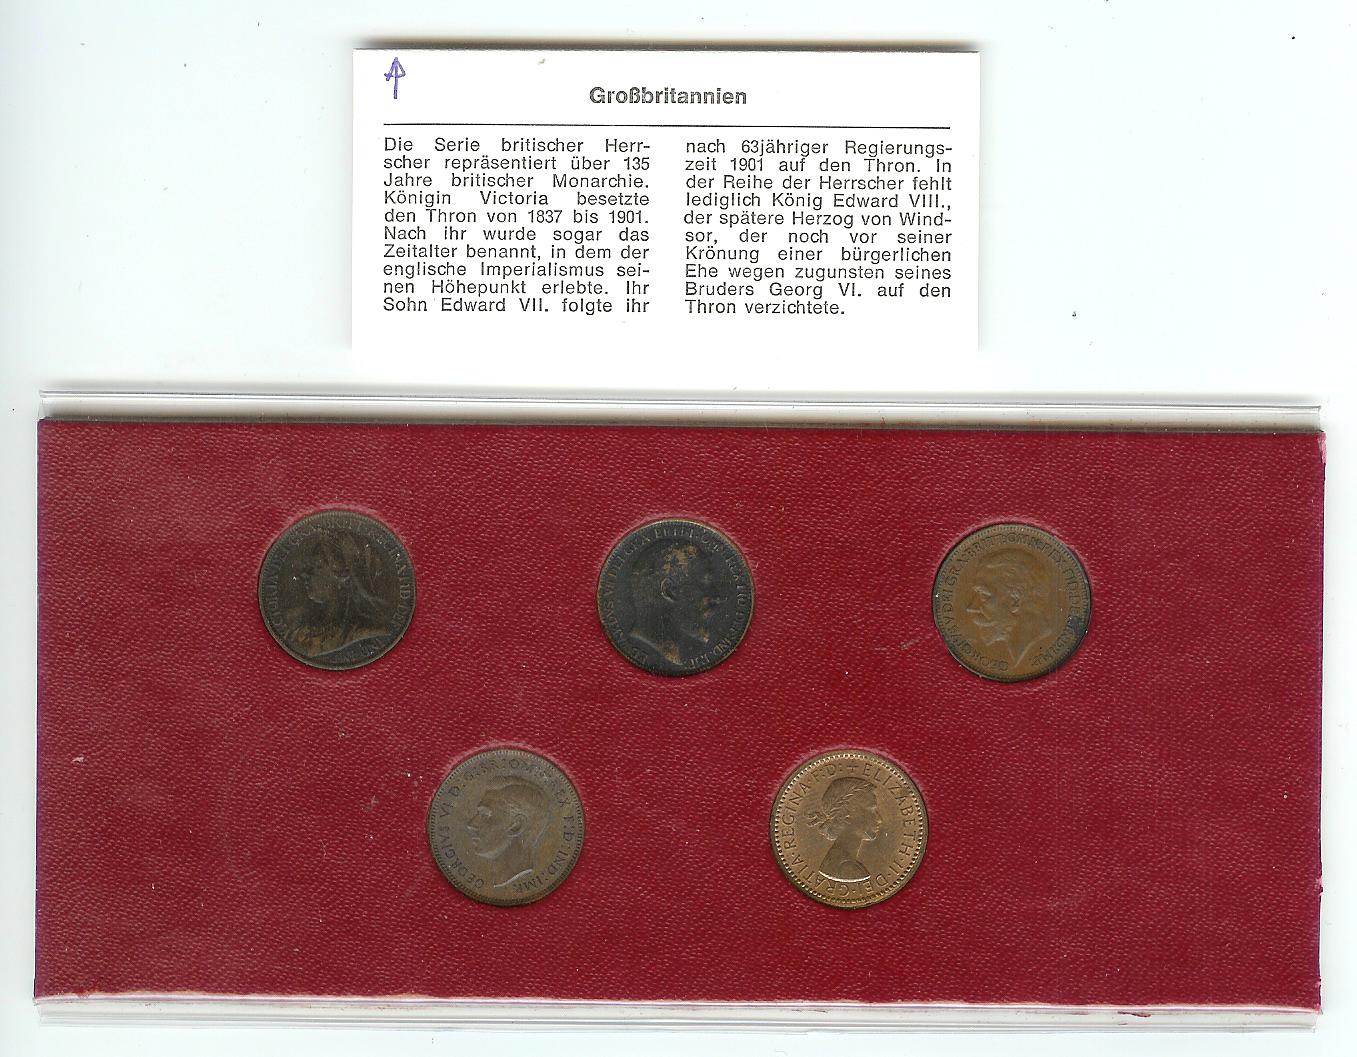  5 Münzen Grossbritanien  britische Herrscher 1897 1932/43/54/69   